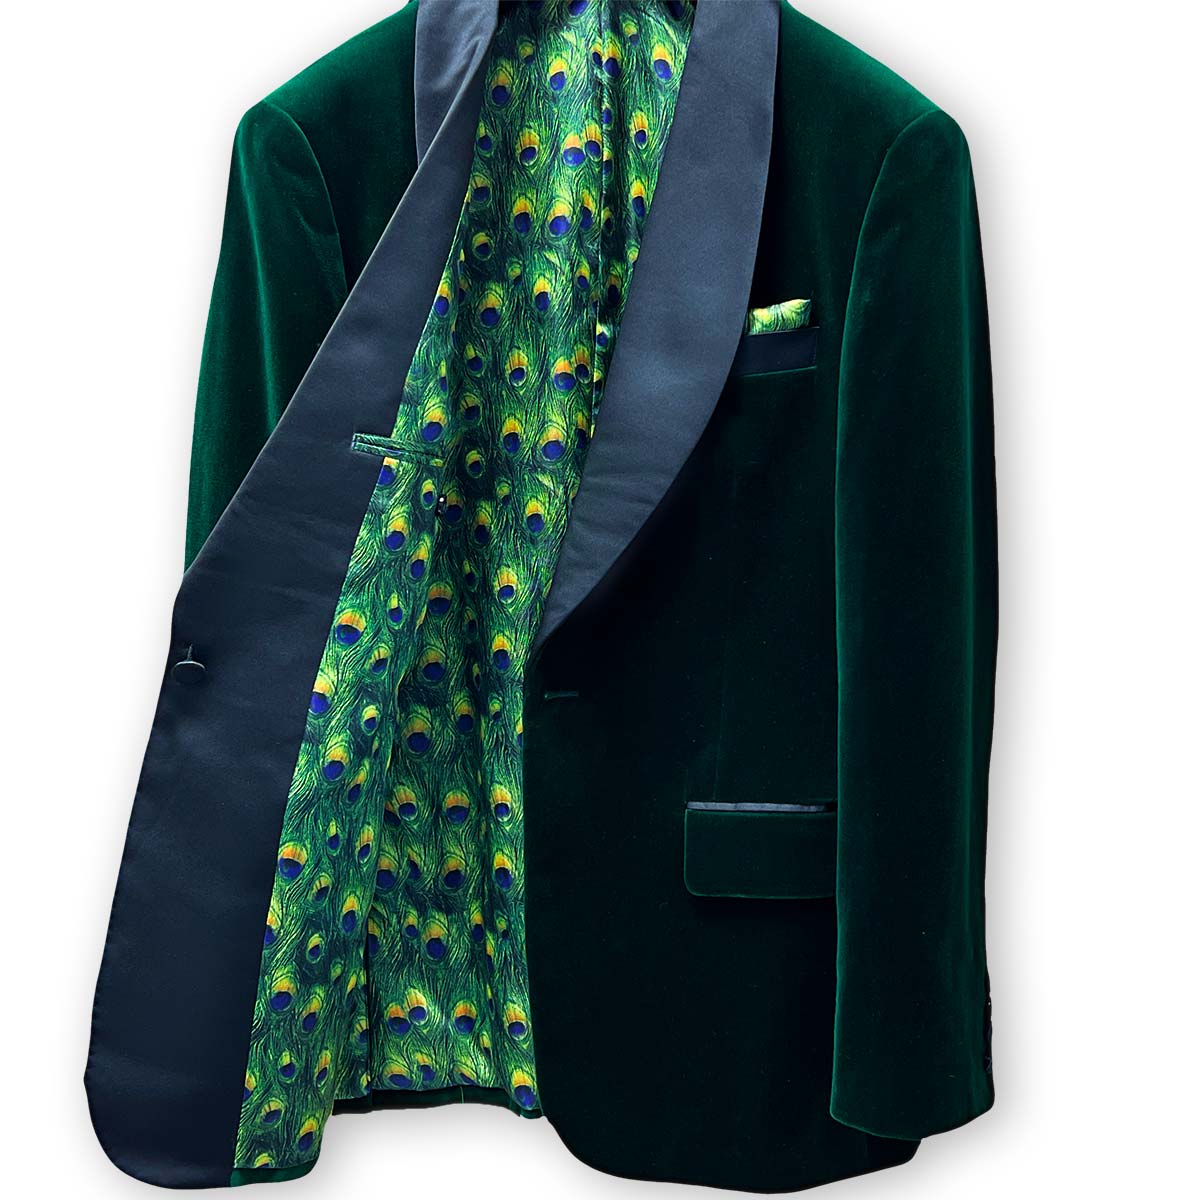 Close-up of green velvet tuxedo collar